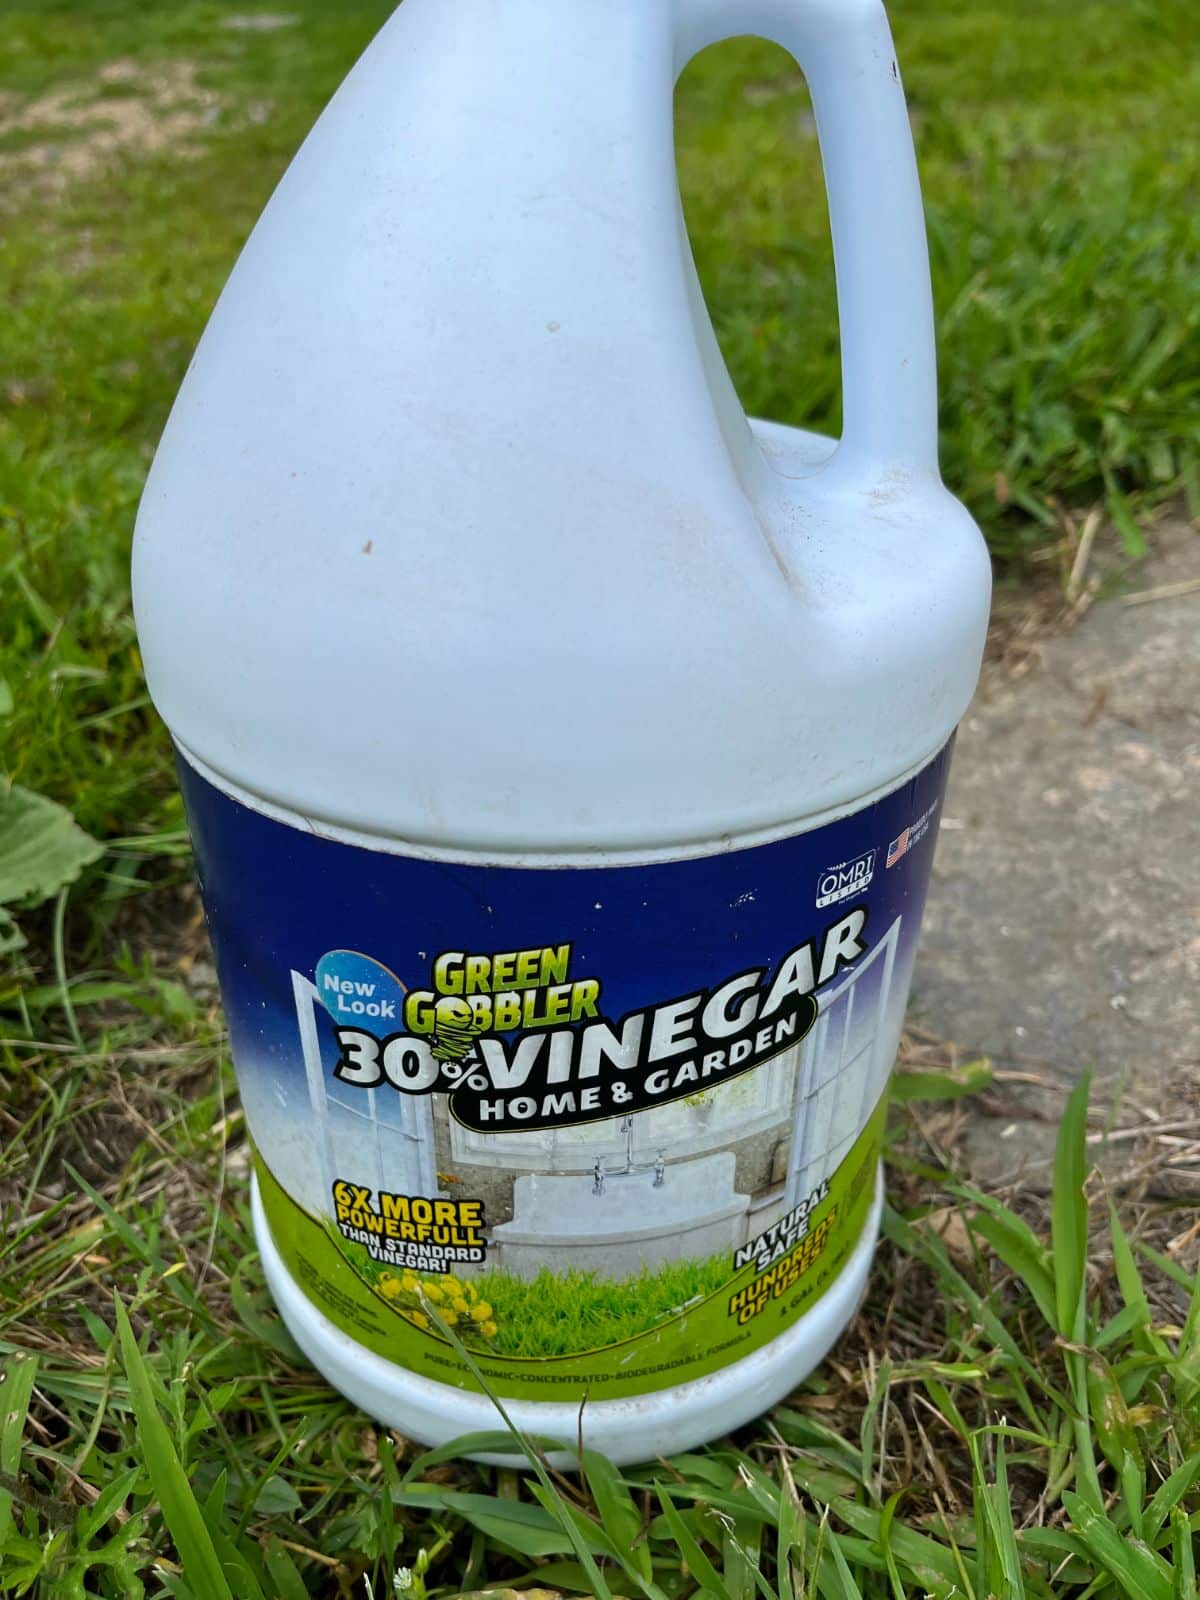 A bottle of 30% acidity horticultural vinegar